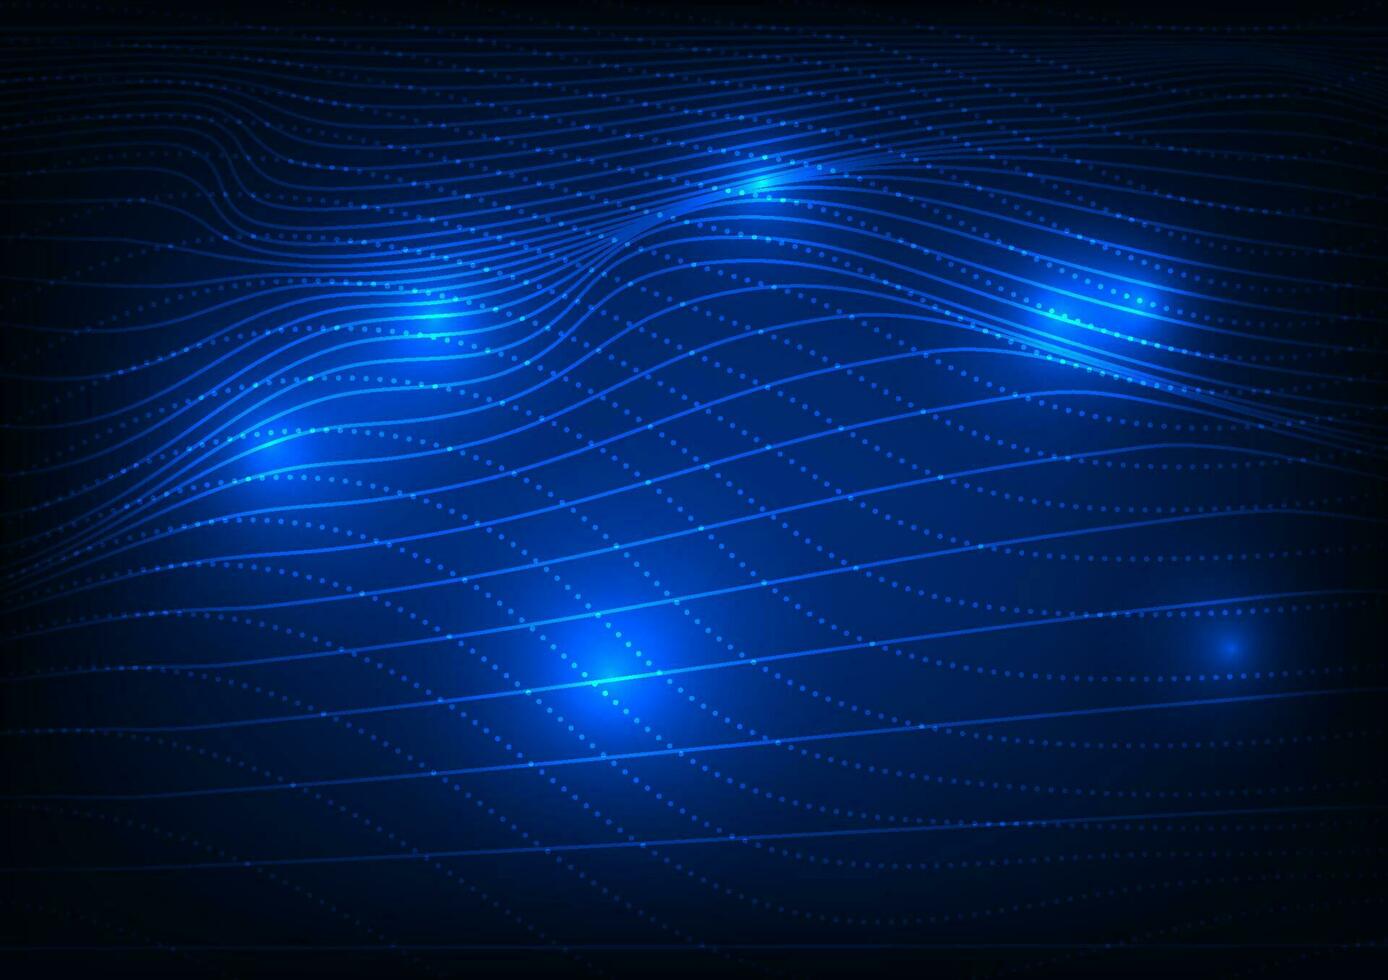 abstrakt Hintergrund Technologie modern Kommunikation Technologie erlaubt Benutzer zu kommunizieren lange Entfernungen schnell. über das Internet Signal Netzwerk System verwenden Linien zu machen Wellen überlappend. vektor